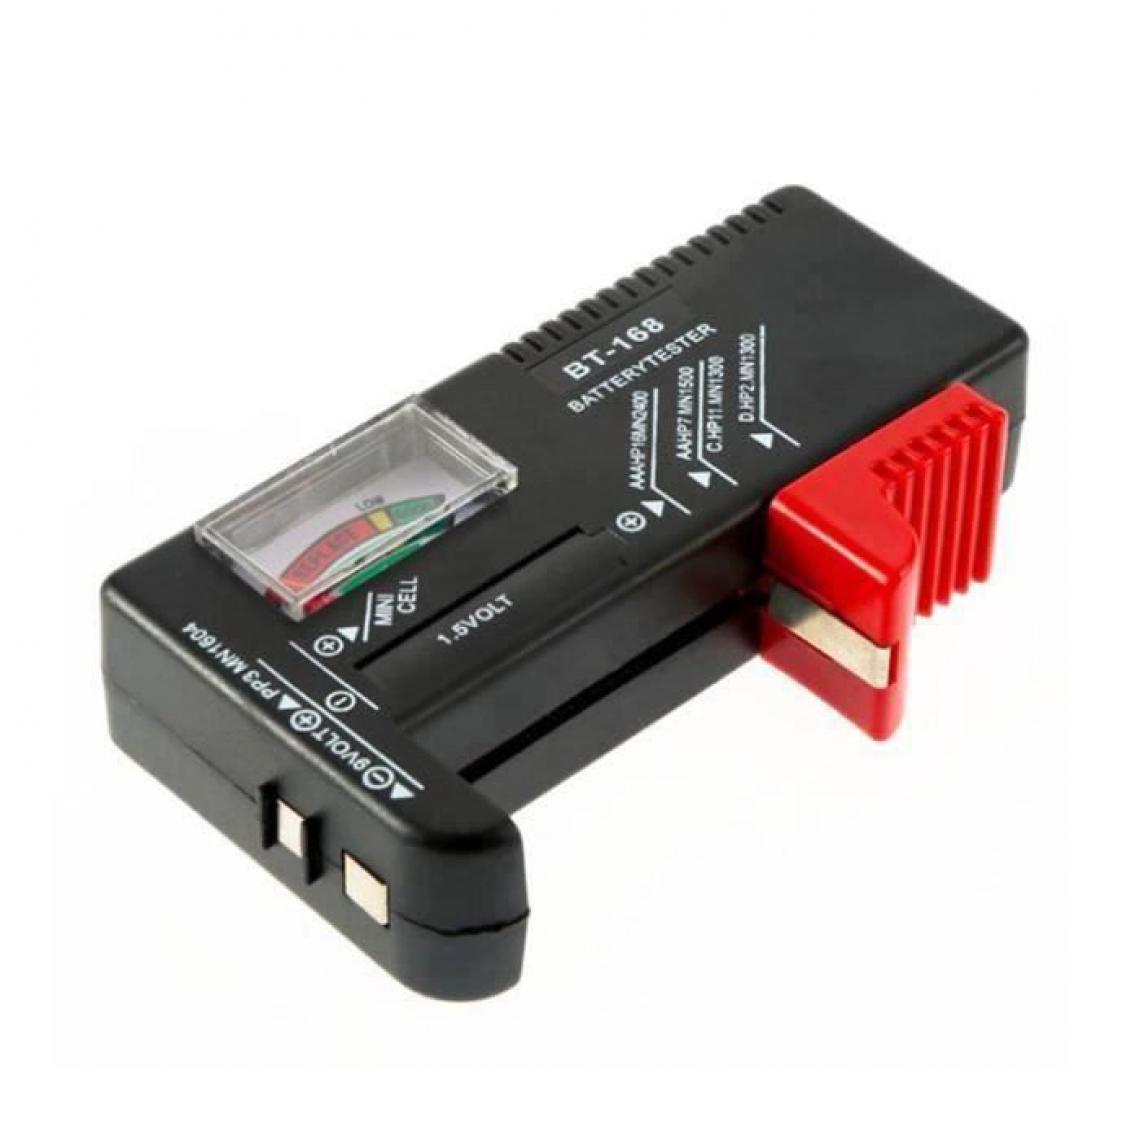 Cstore - BT168 Vérificateur testeur universel de batterie pour AA AAA C D 9V 1.5V pile bouton - Piles standard